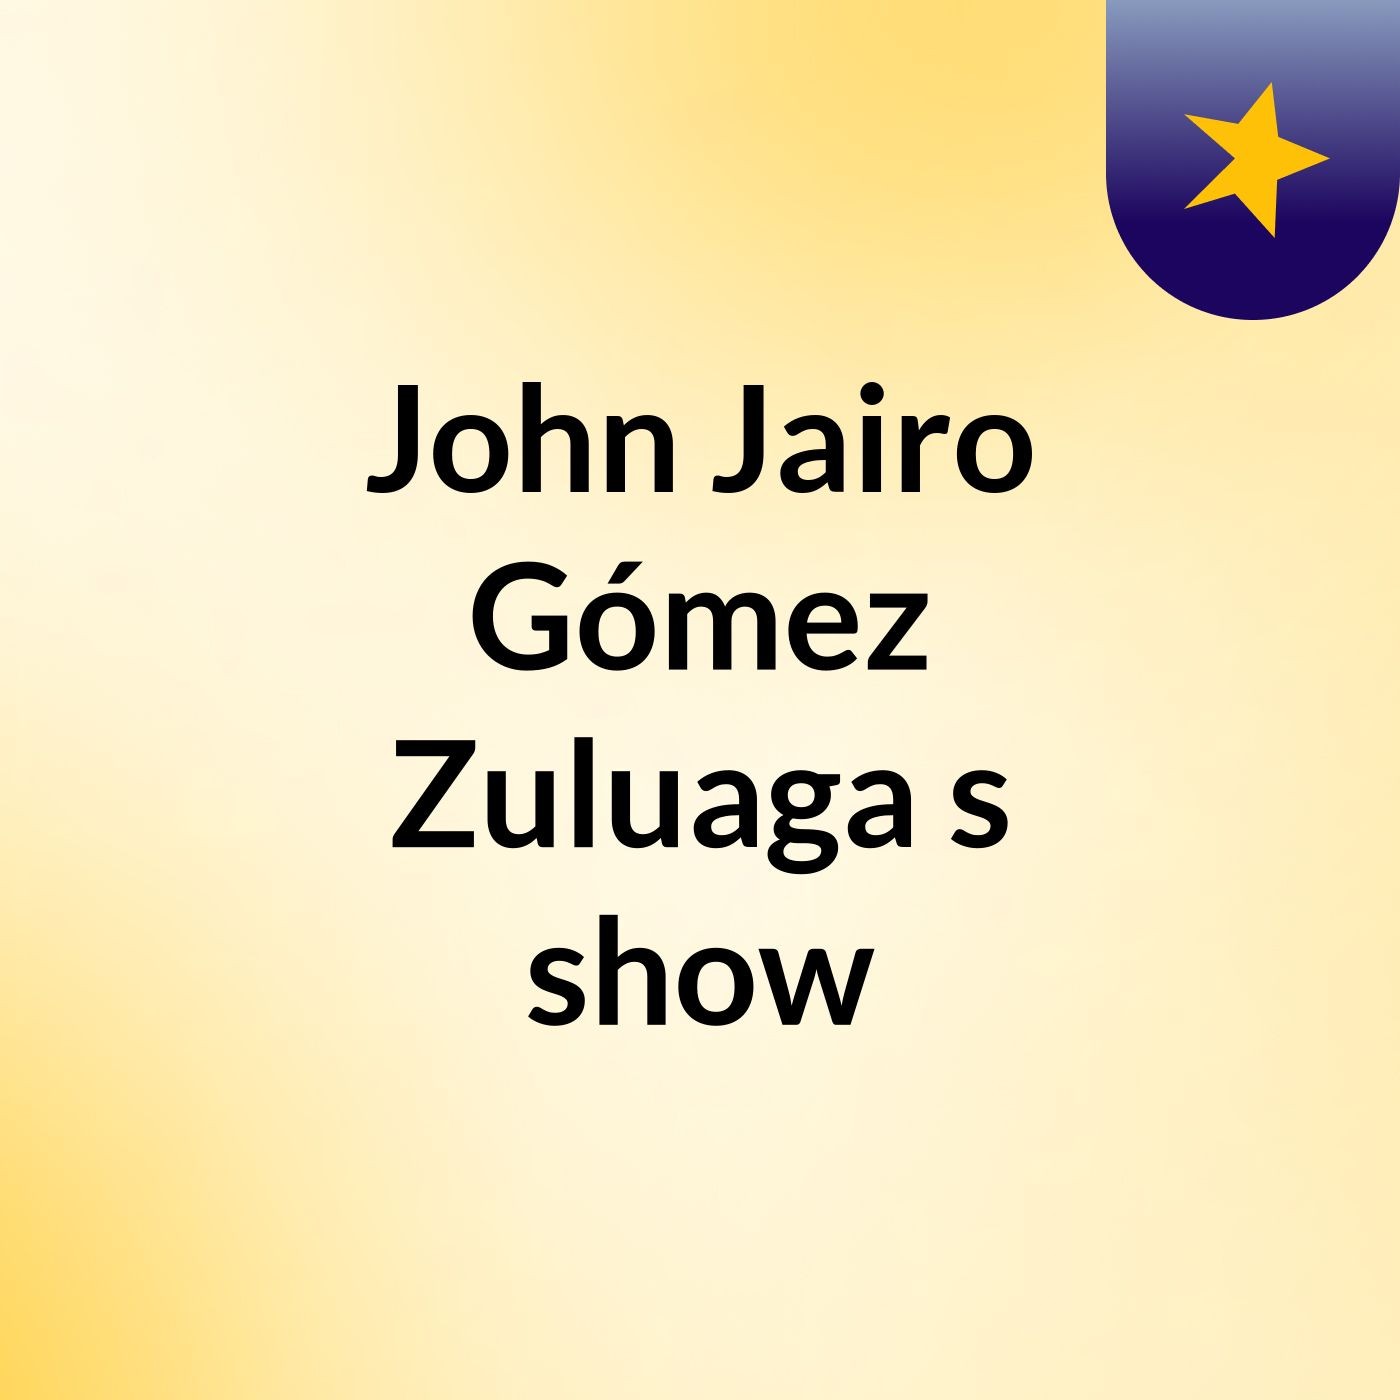 John Jairo Gómez Zuluaga's show